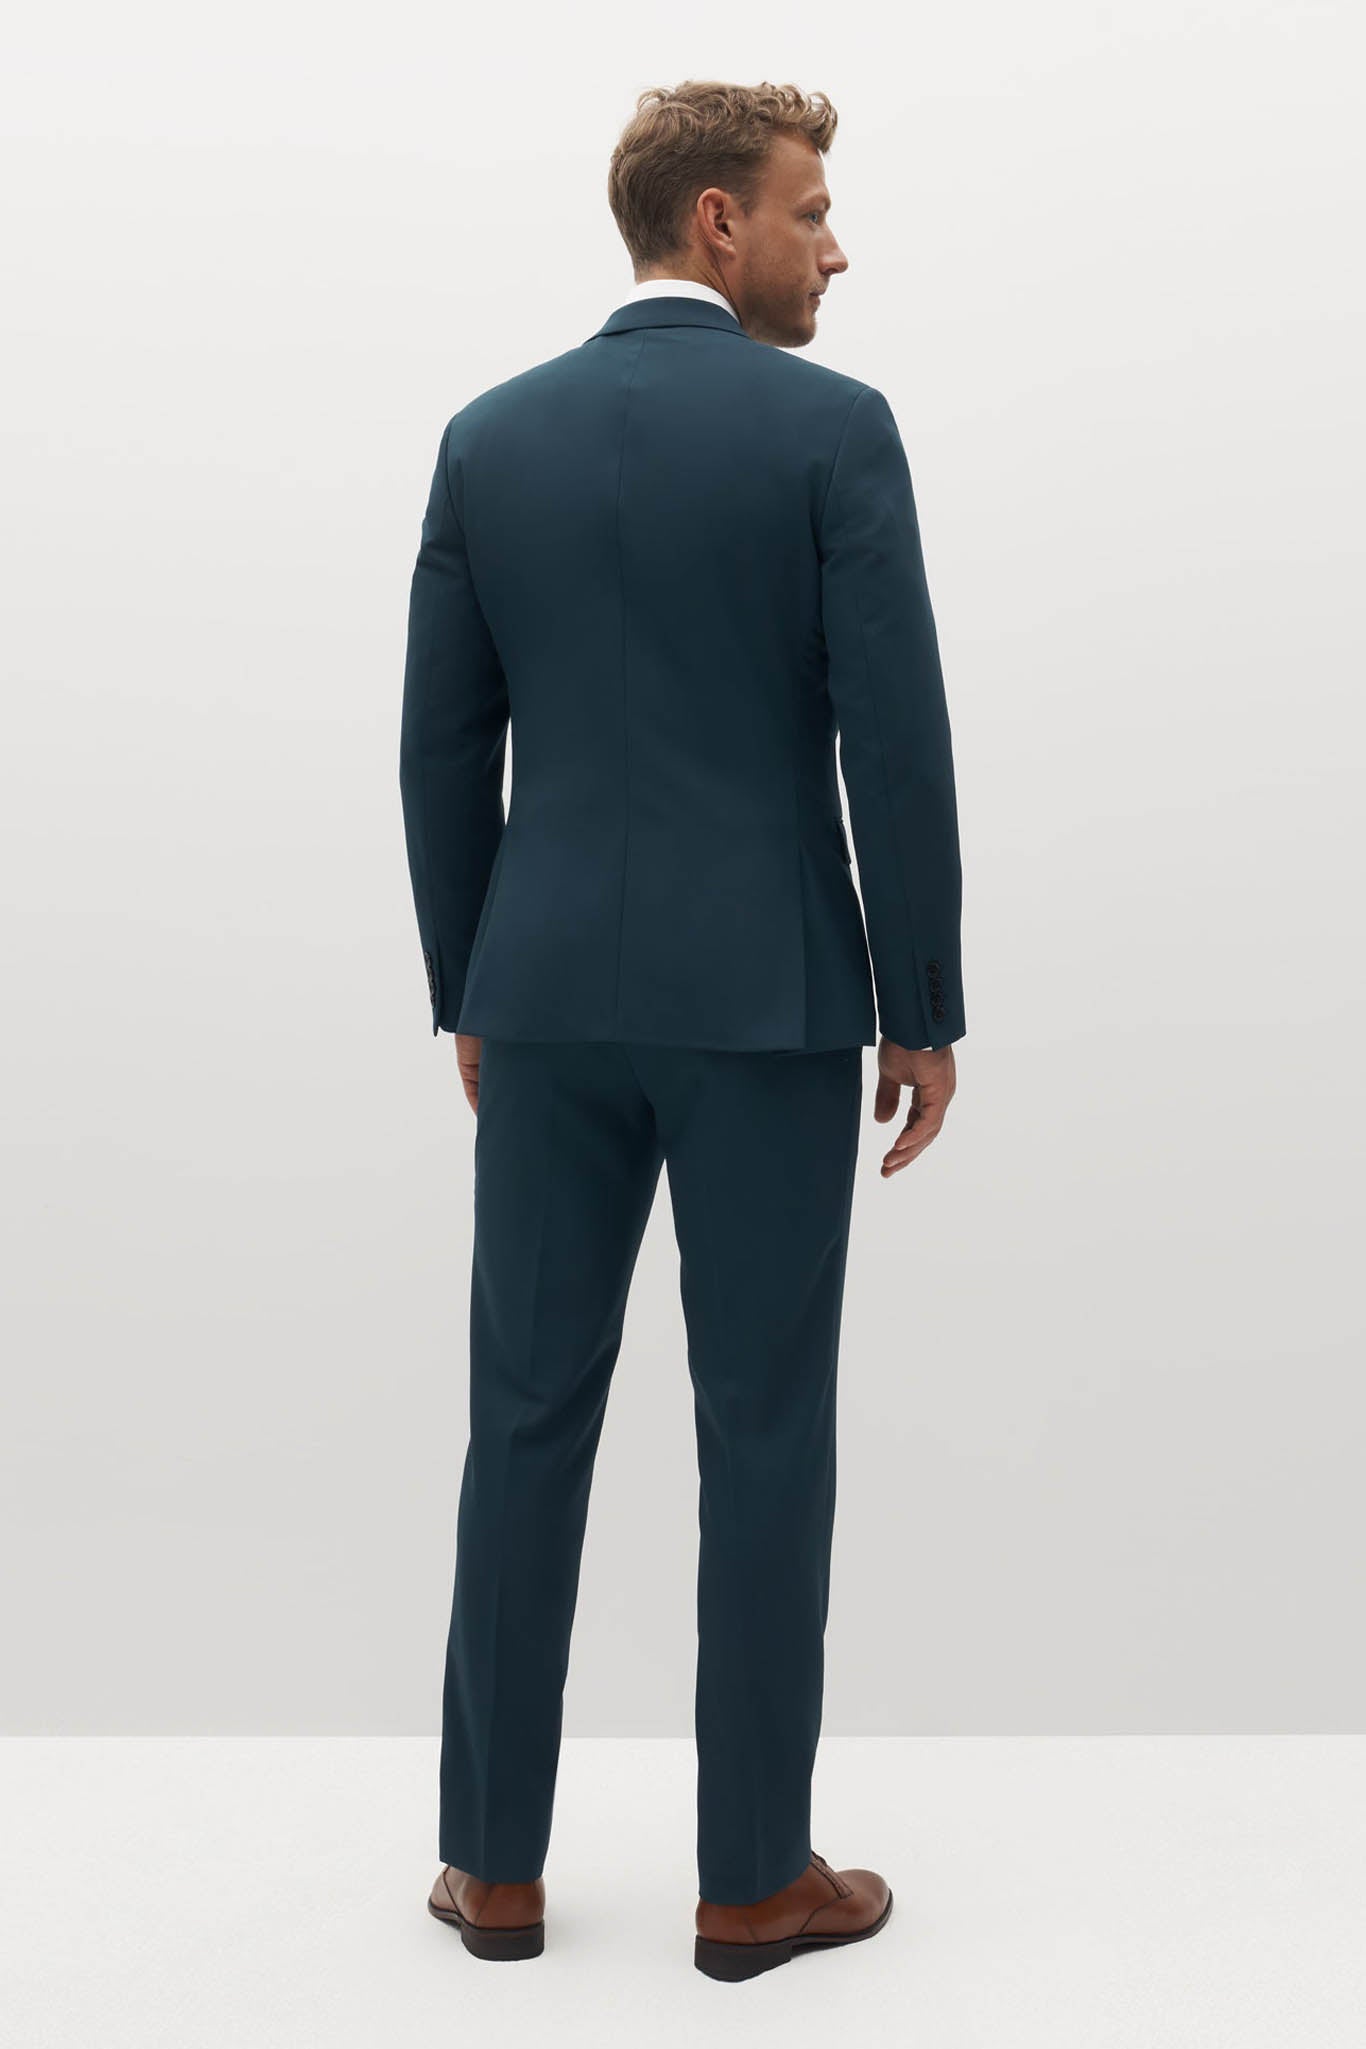 Teal Groomsman Suit by SuitShop